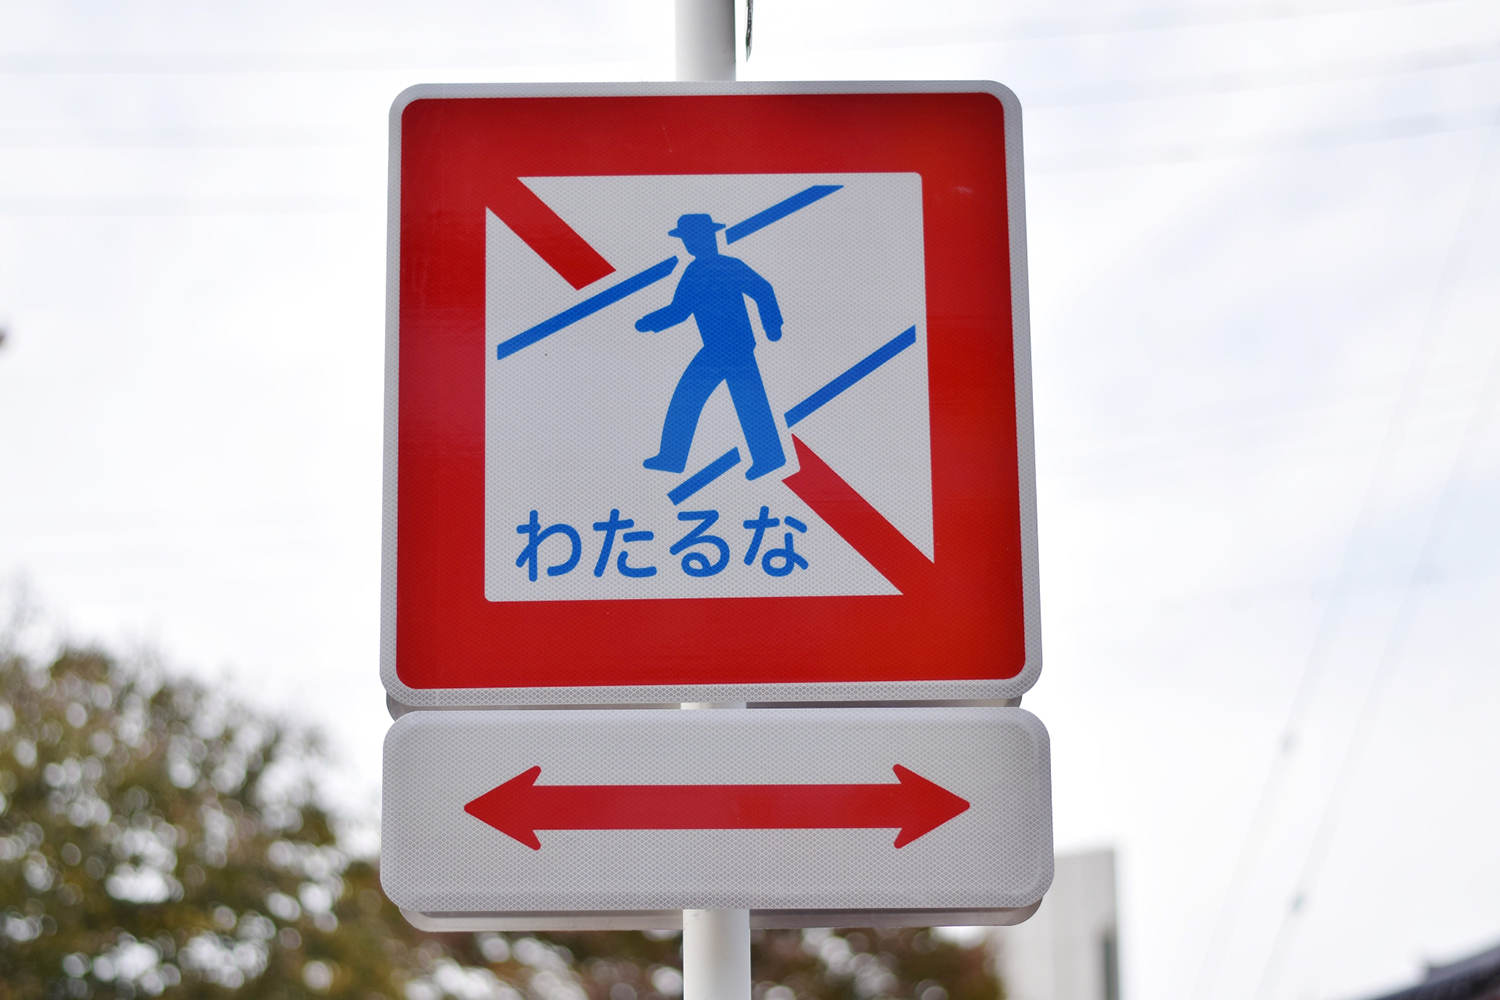 最近「横断禁止」に代わって「わたるな」と書かれた標識が増えている理由 〜 画像1